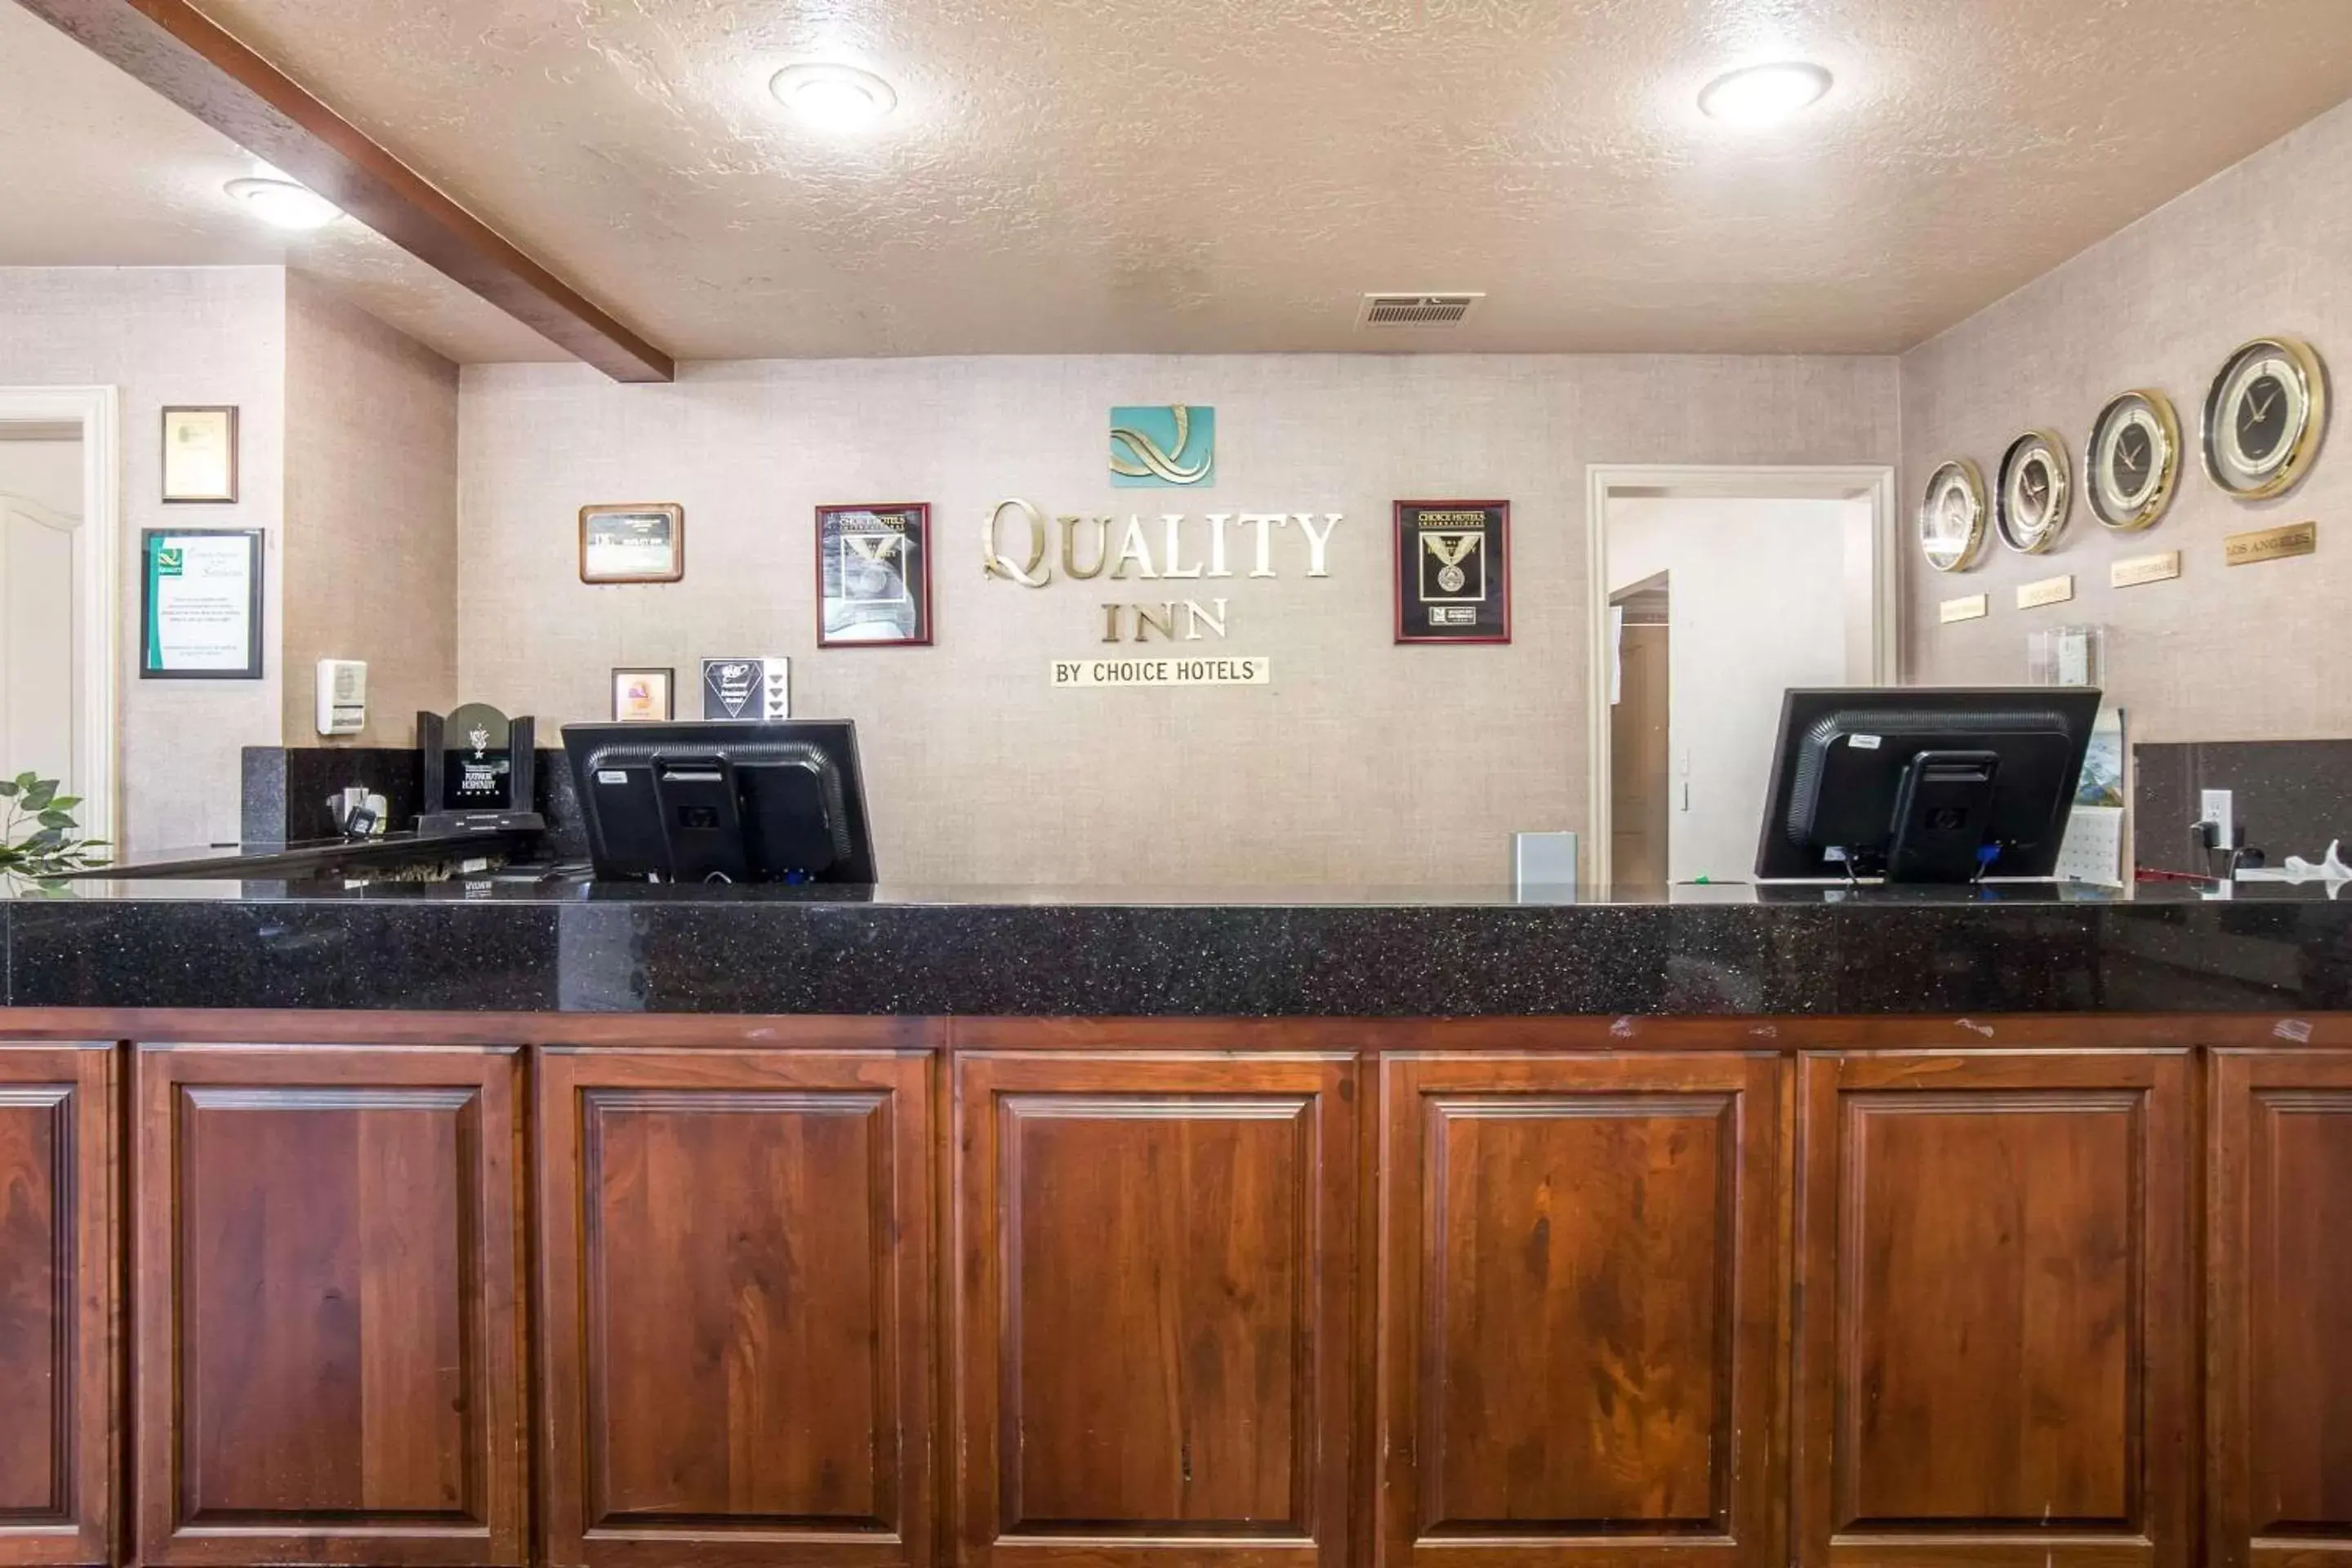 Lobby or reception, Lobby/Reception in Quality Inn Saint George South Bluff